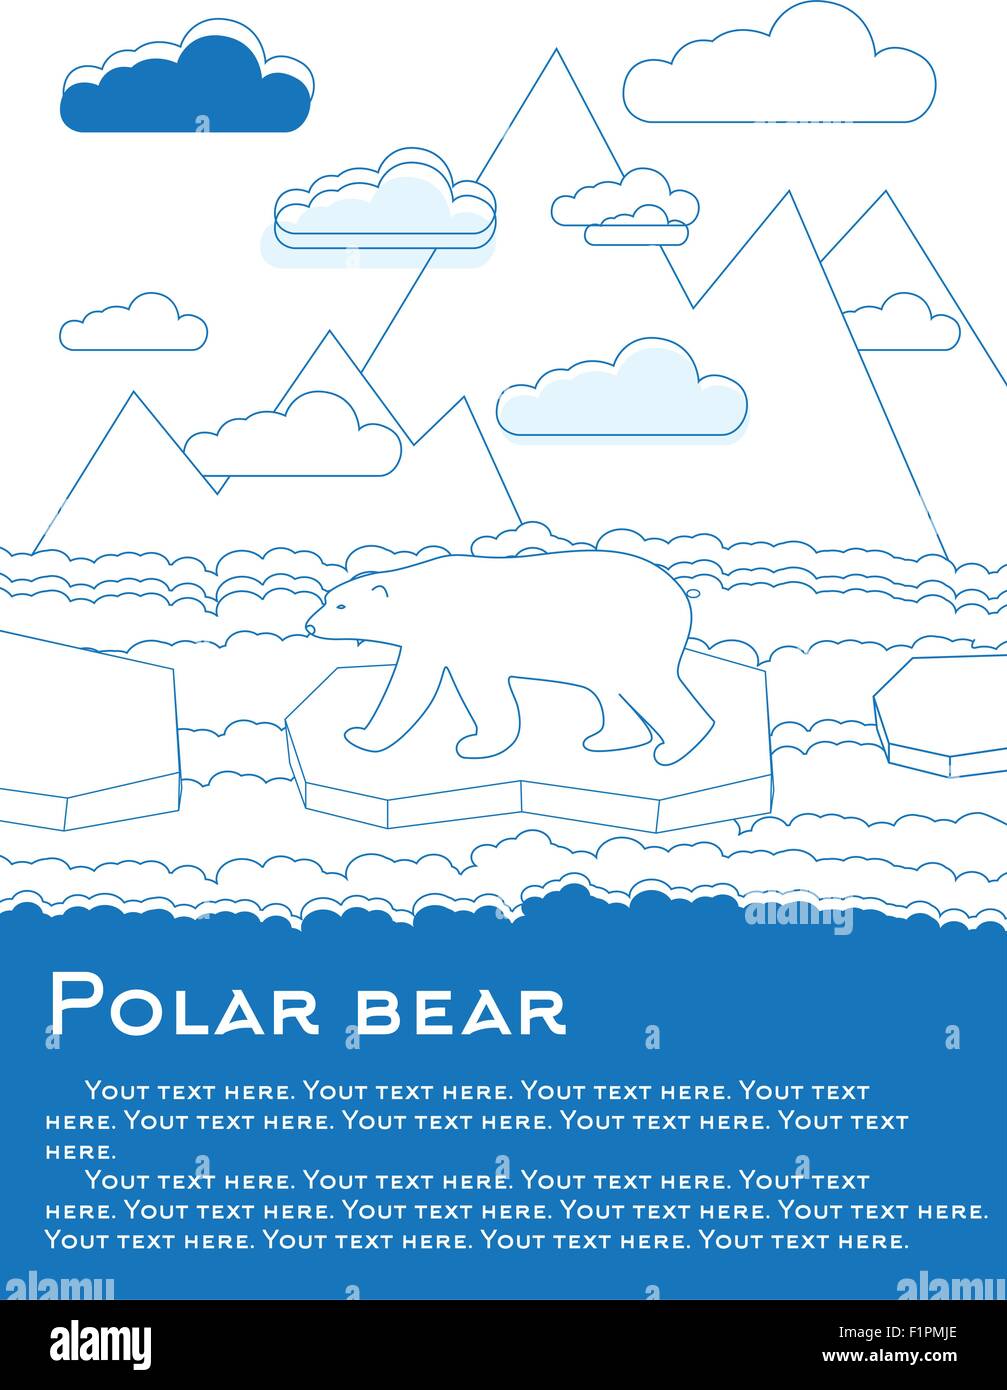 Eisbären auf einer Eisscholle im Ozean Ergebnis der globalen Erwärmung Vektor-Illustration für Zeitschriften oder Zeitungen Stock Vektor